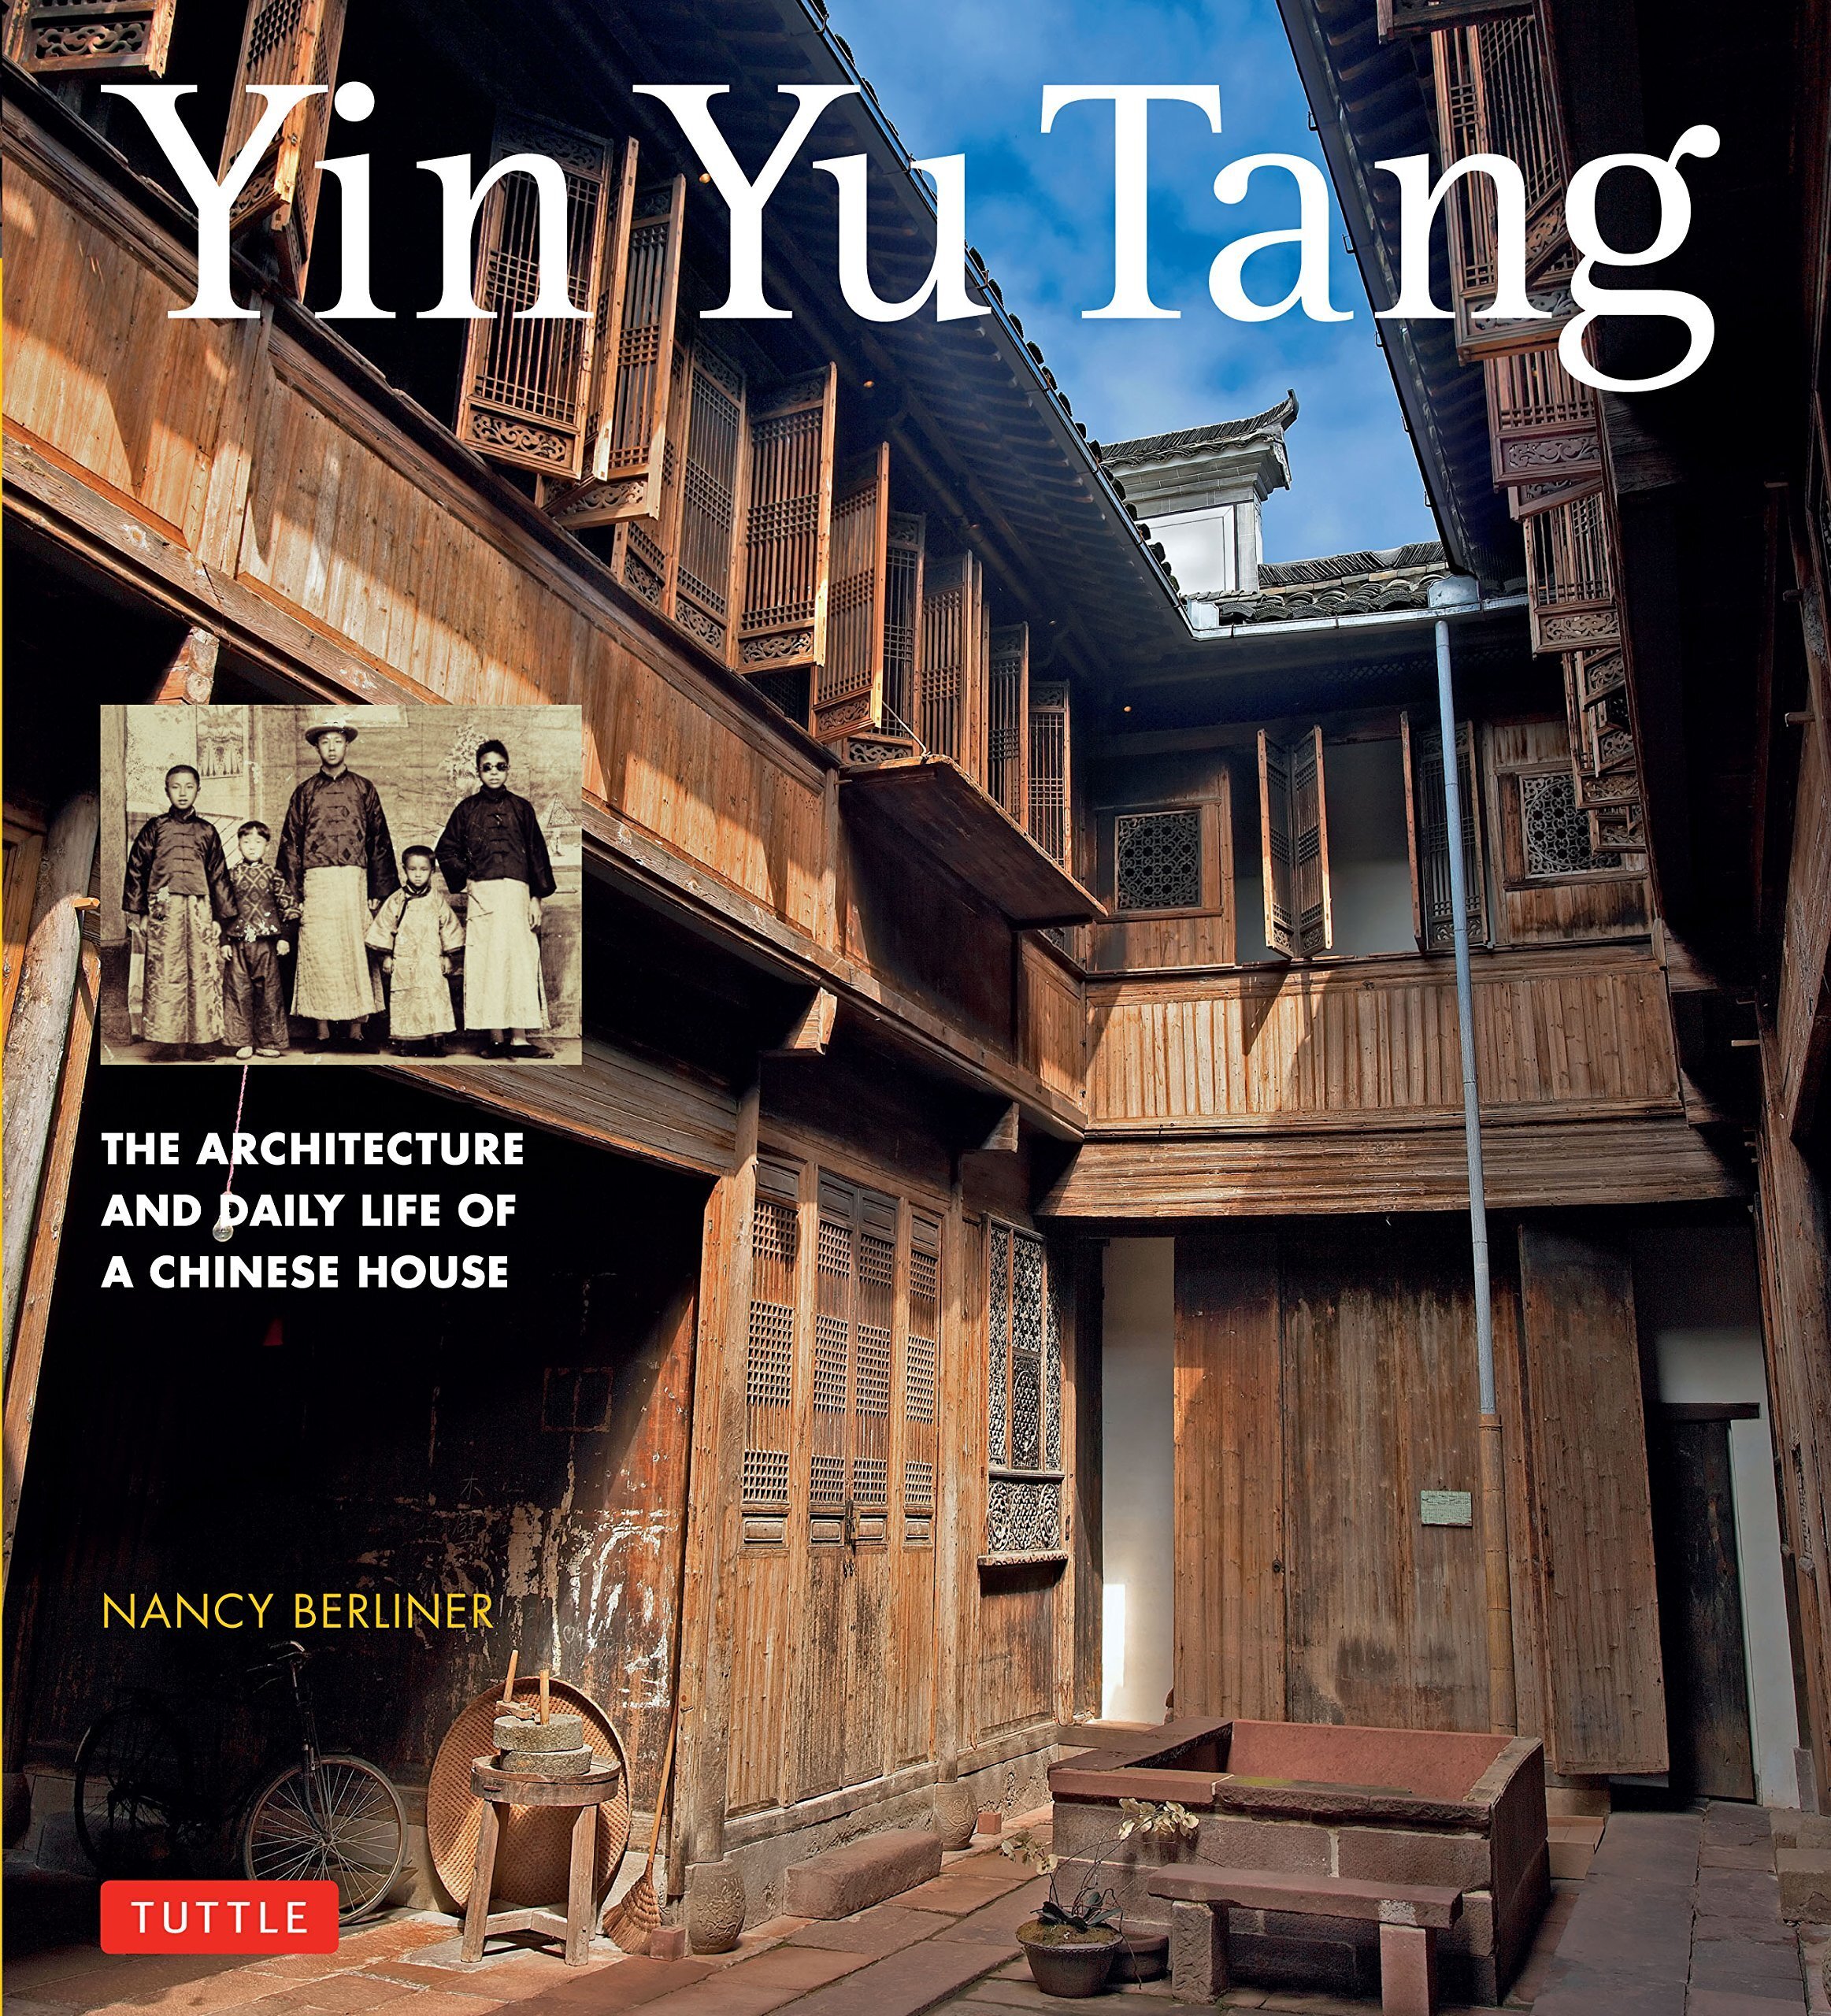 yin yu tang book cover.jpg